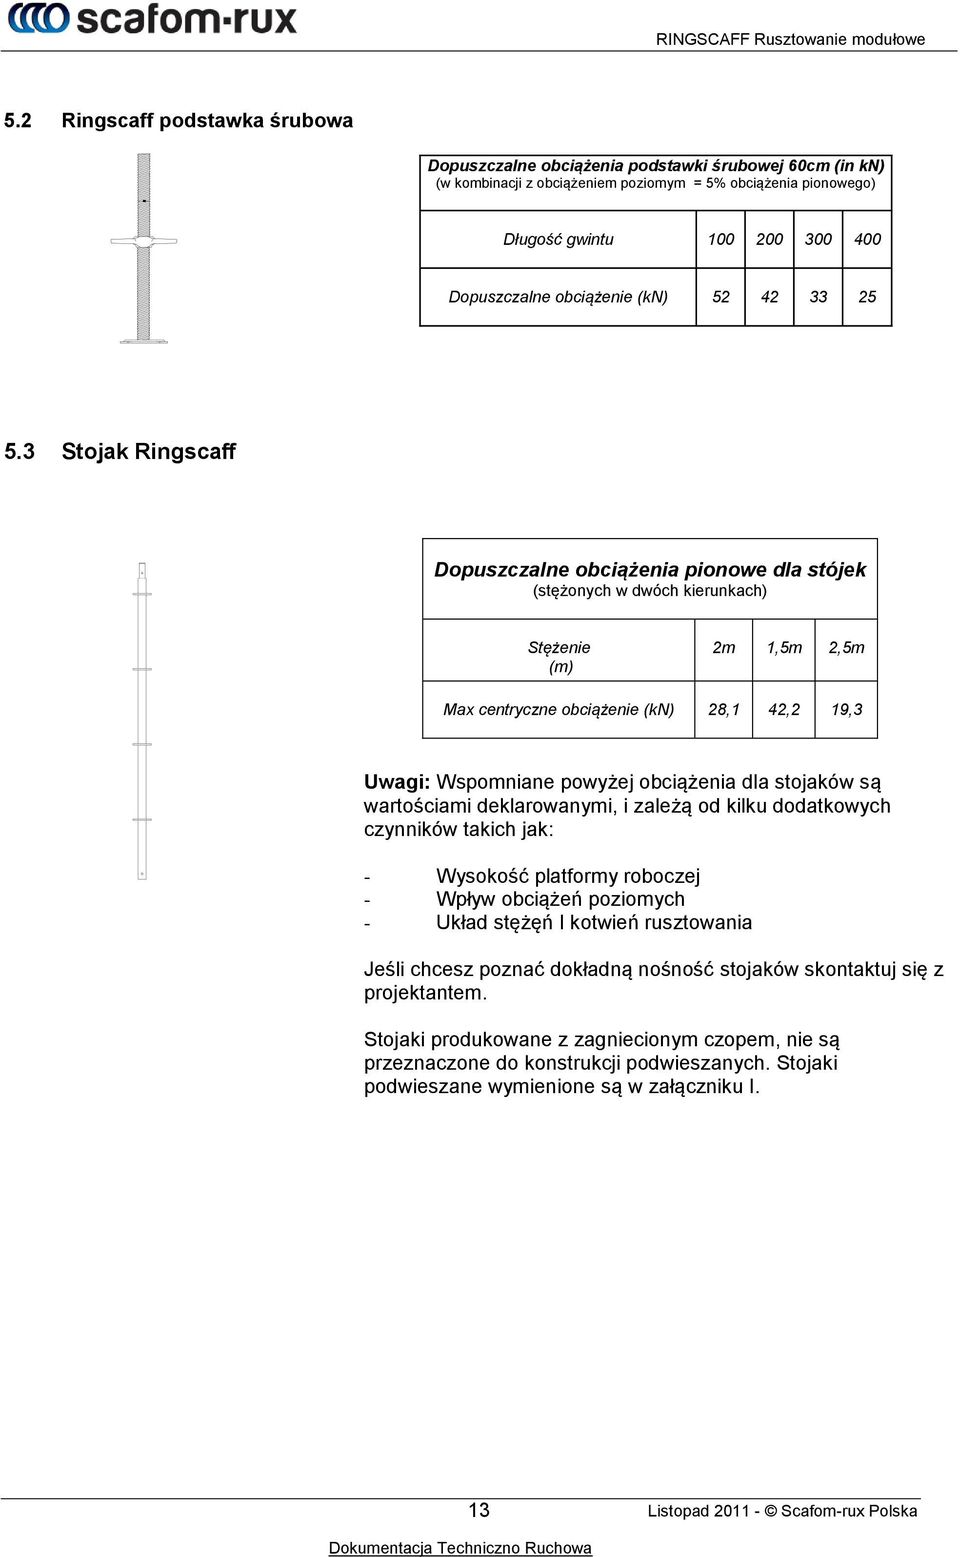 3 Stojak Ringscaff Dopuszczalne obciążenia pionowe dla stójek (stężonych w dwóch kierunkach) Stężenie (m) 2m 1,5m 2,5m Max centryczne obciążenie (kn) 28,1 42,2 19,3 Uwagi: Wspomniane powyżej